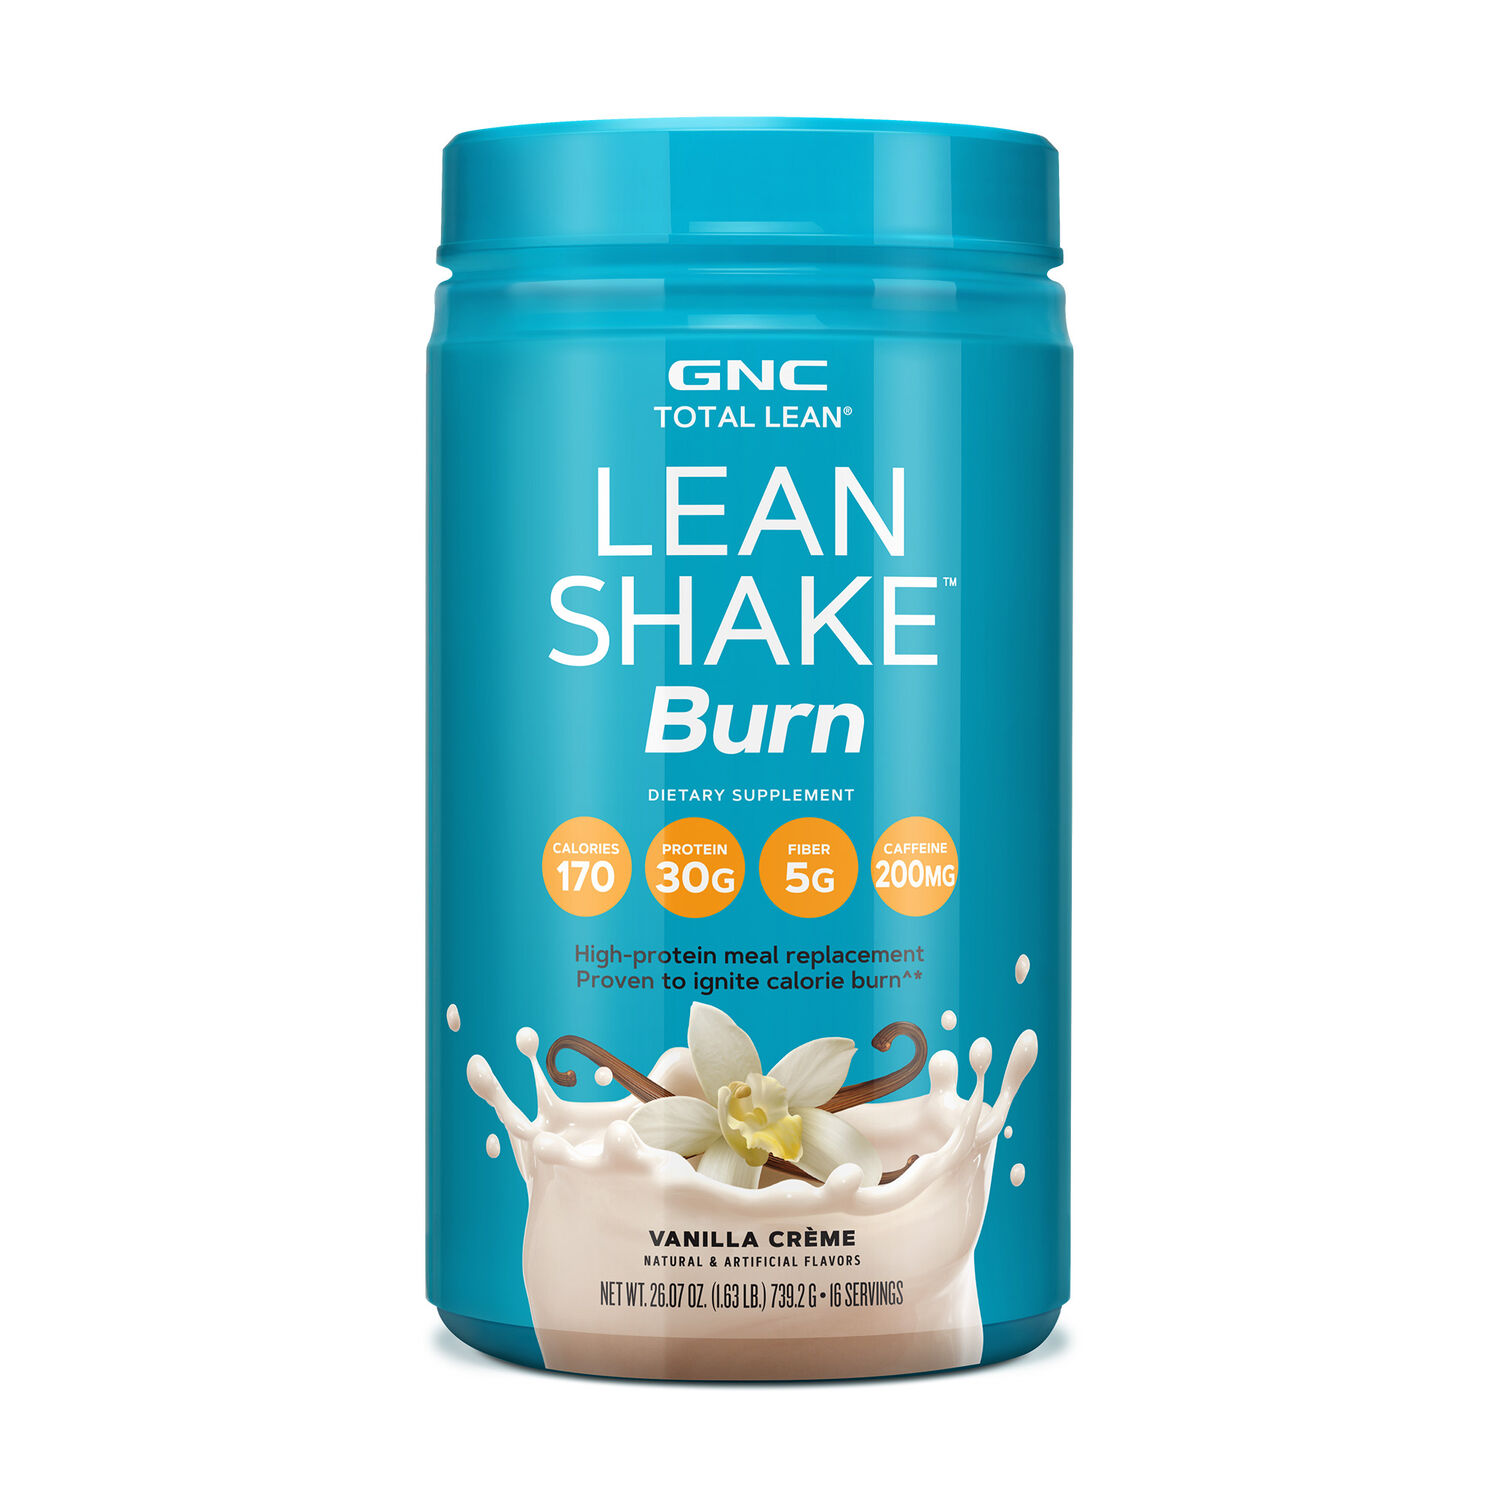 GNC Total Lean Lean Shake Burn - Vanilla Crème (16 Servings) - 1.63 lbs.